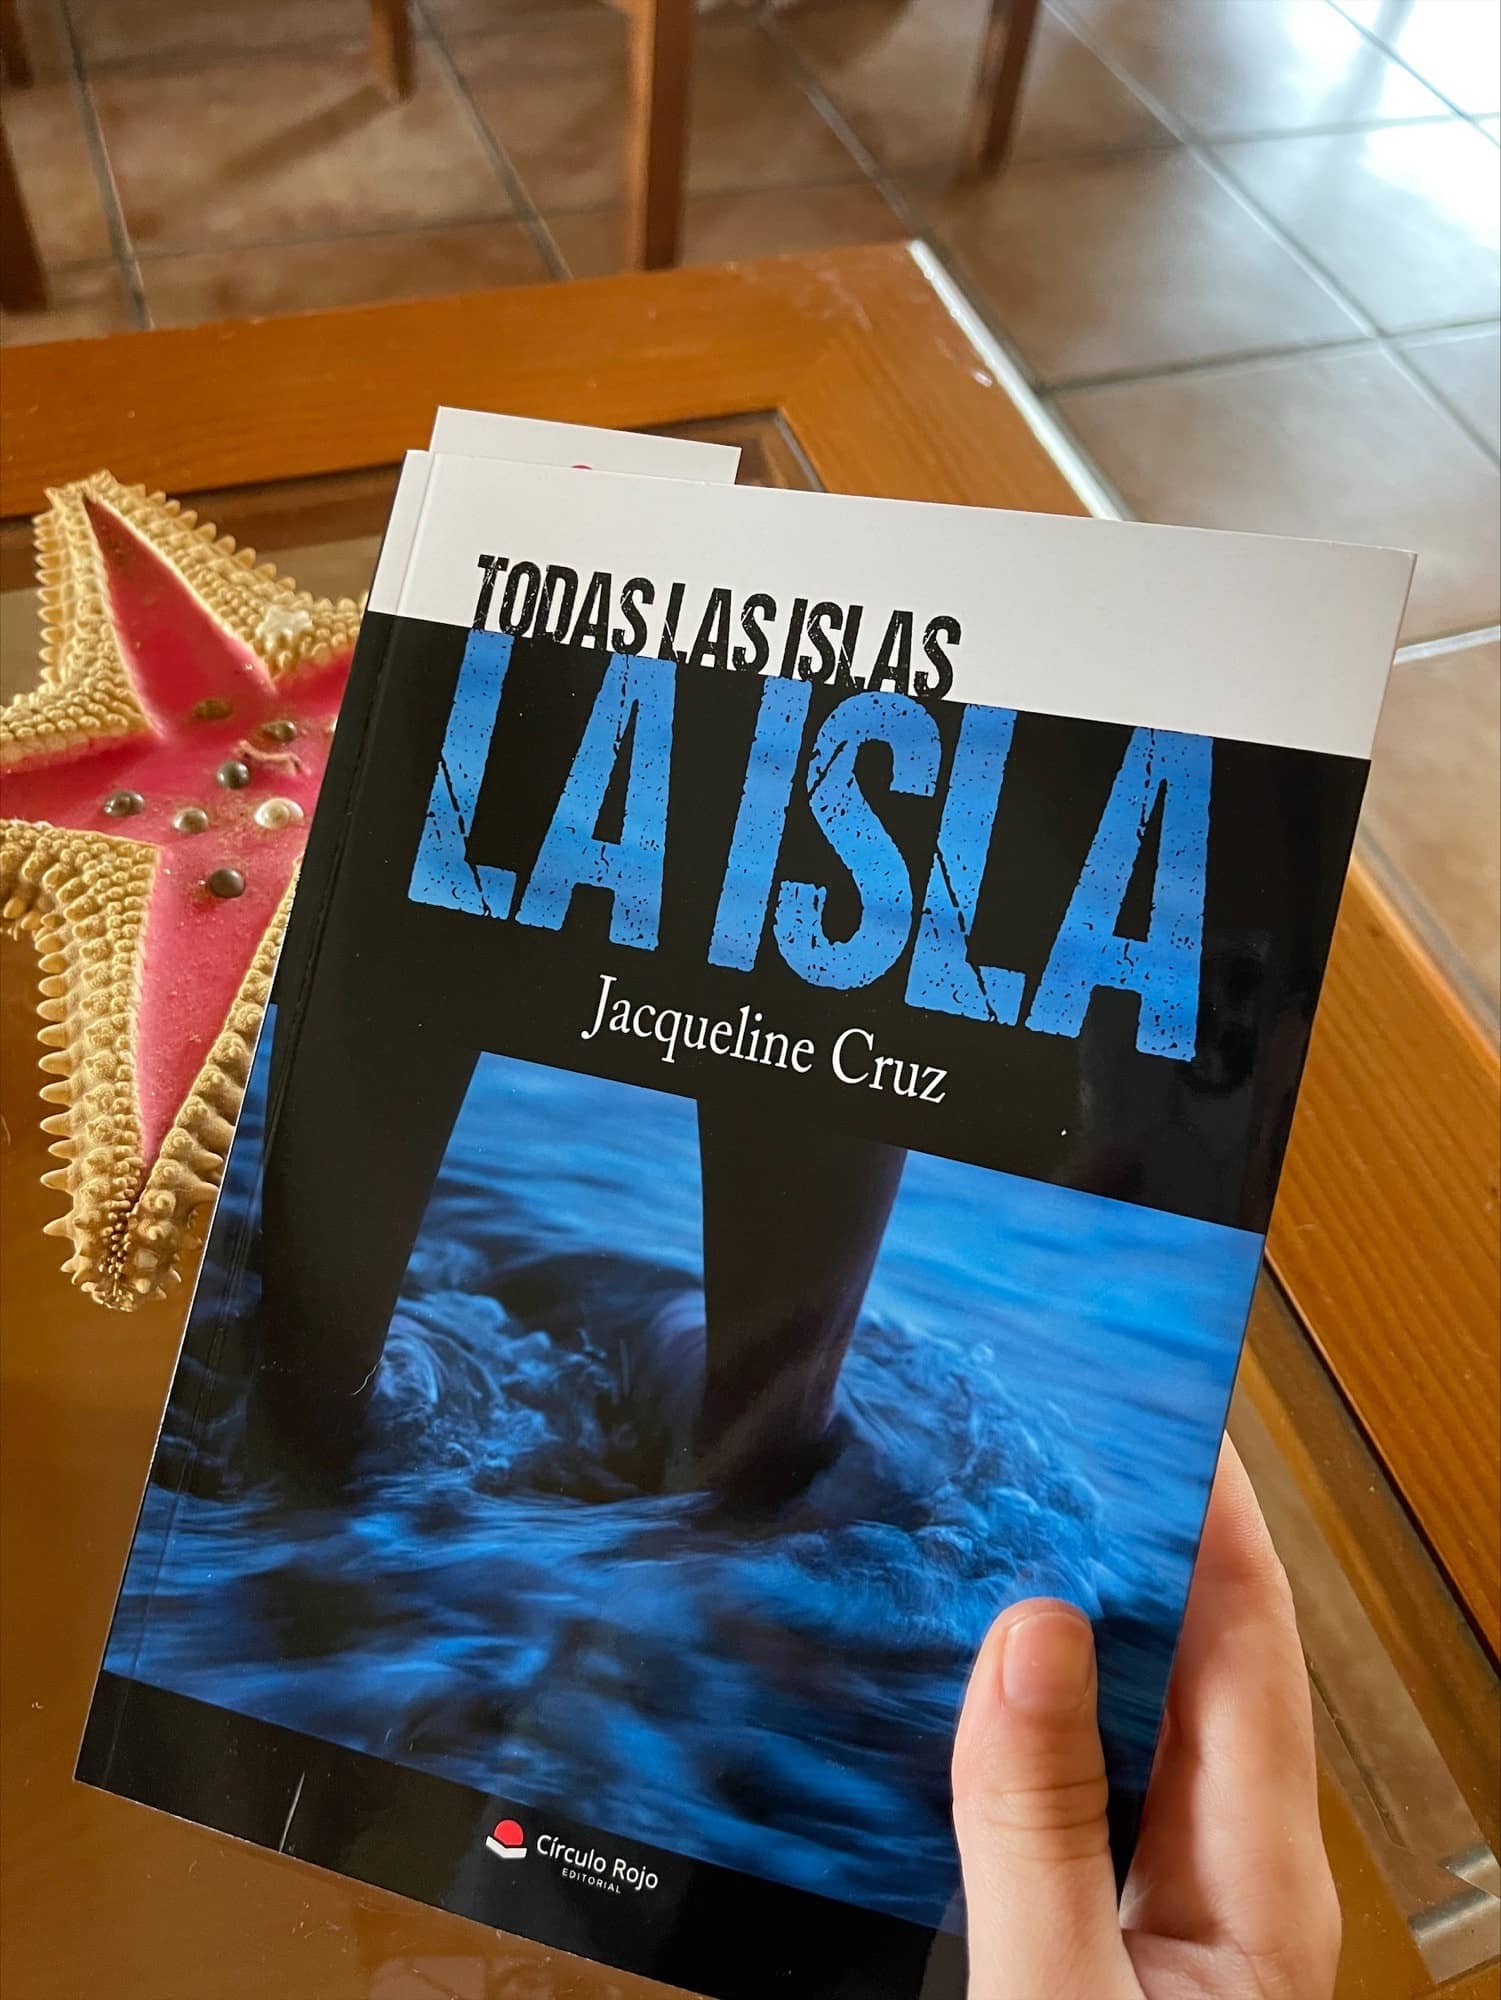 Reseña de “Todas las islas la Isla” de Jacqueline Cruz | Por Lidia Hernández Villegas